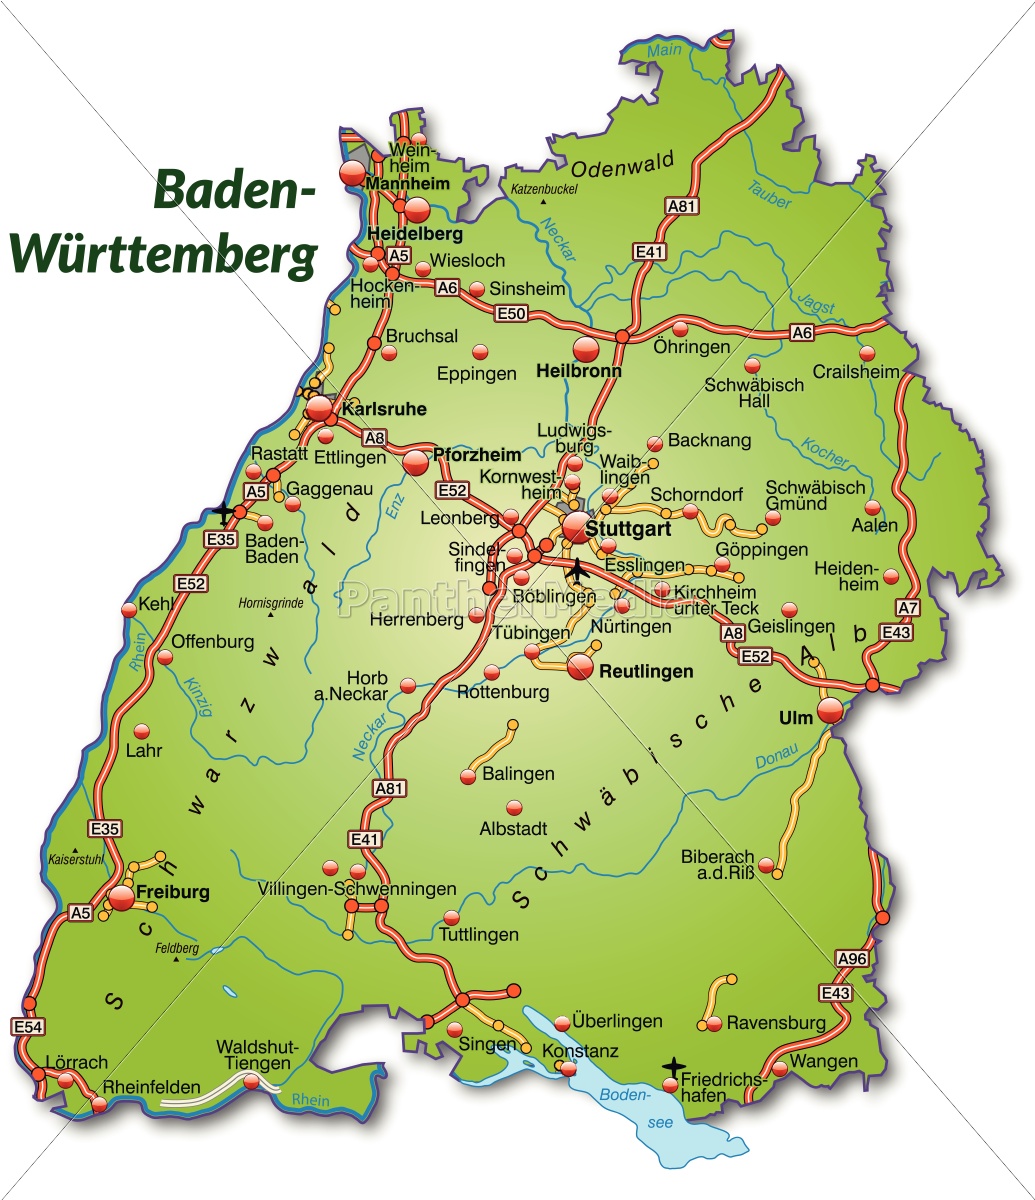 mapa badenii-wirtembergii z siecią transportową - Stockphoto